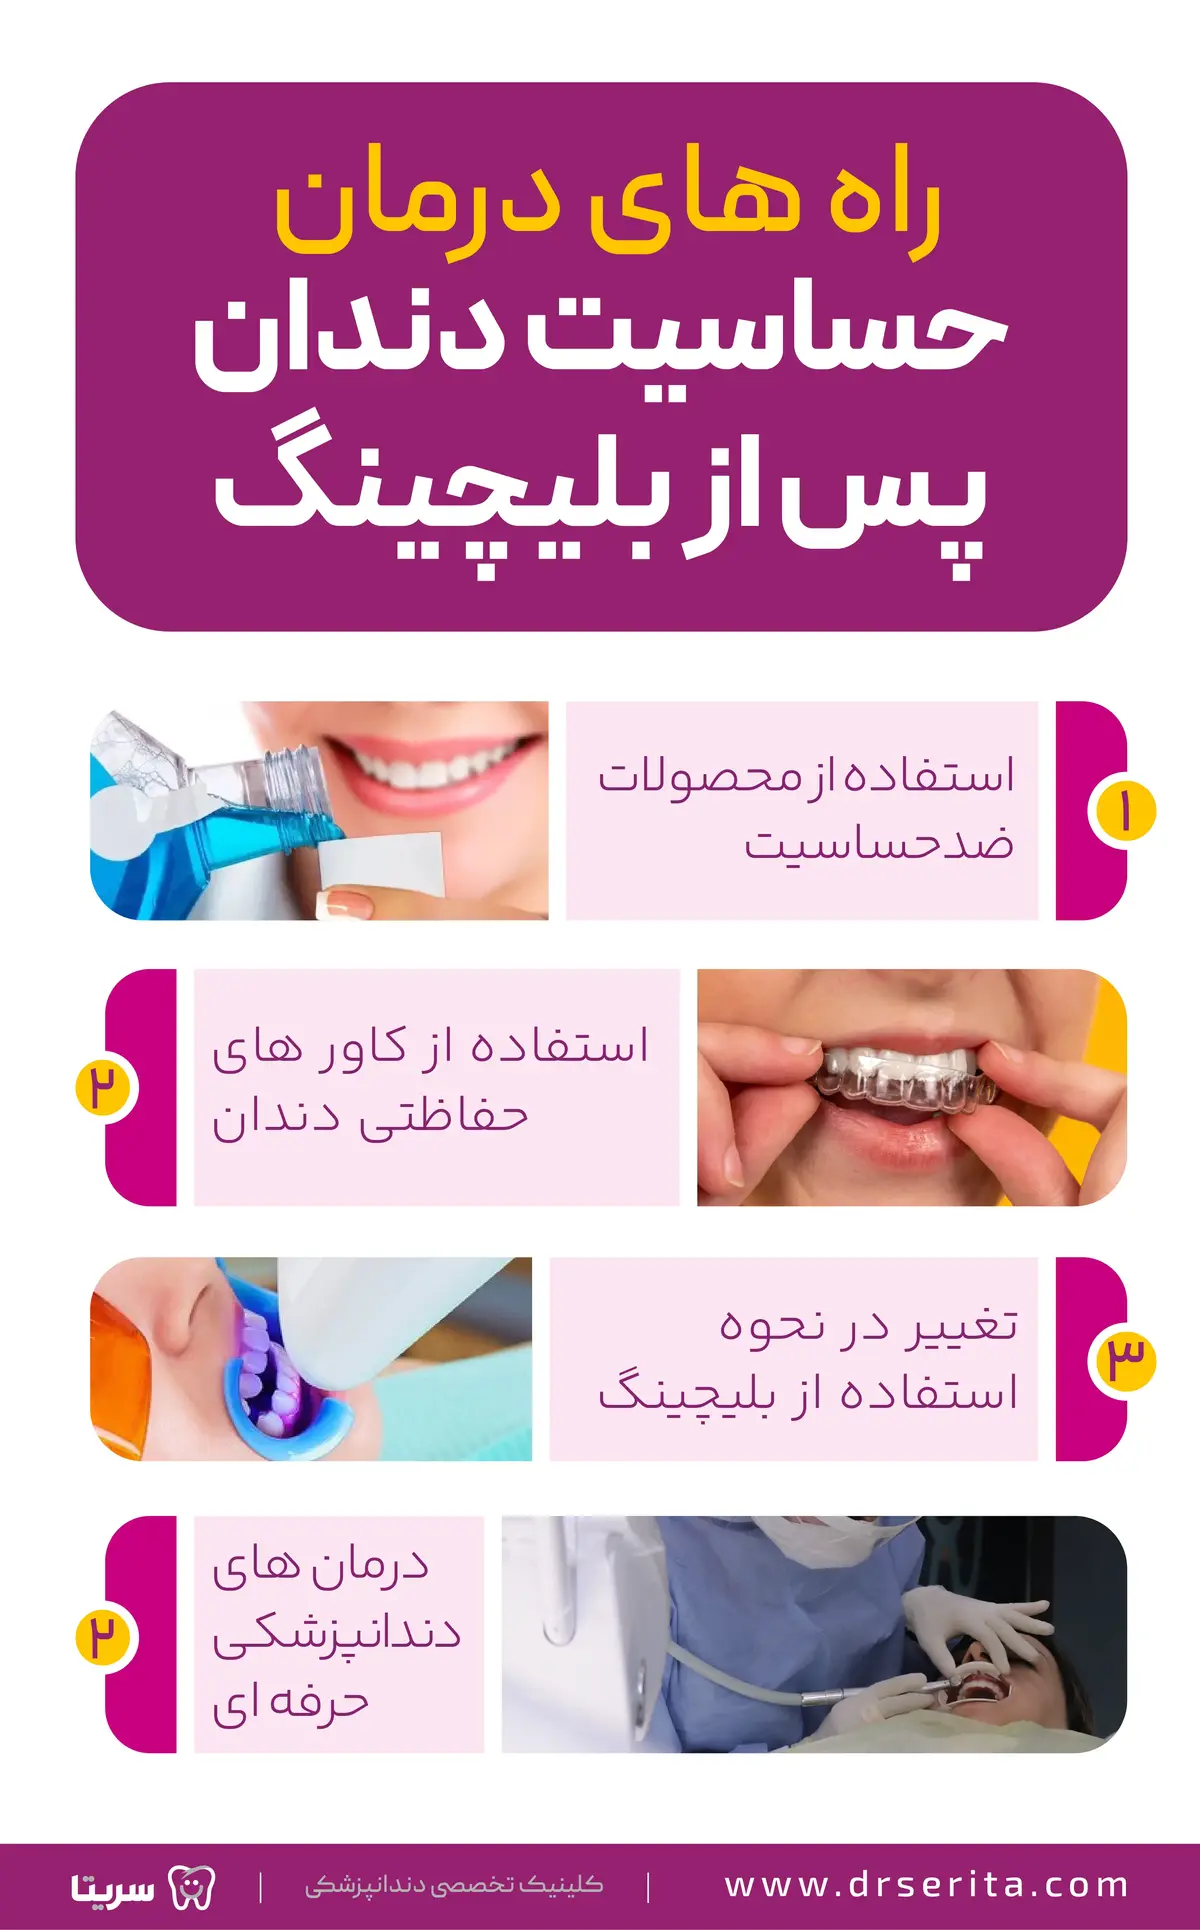 راه های درمان حساسیت بعد از بلیچینگ دندان